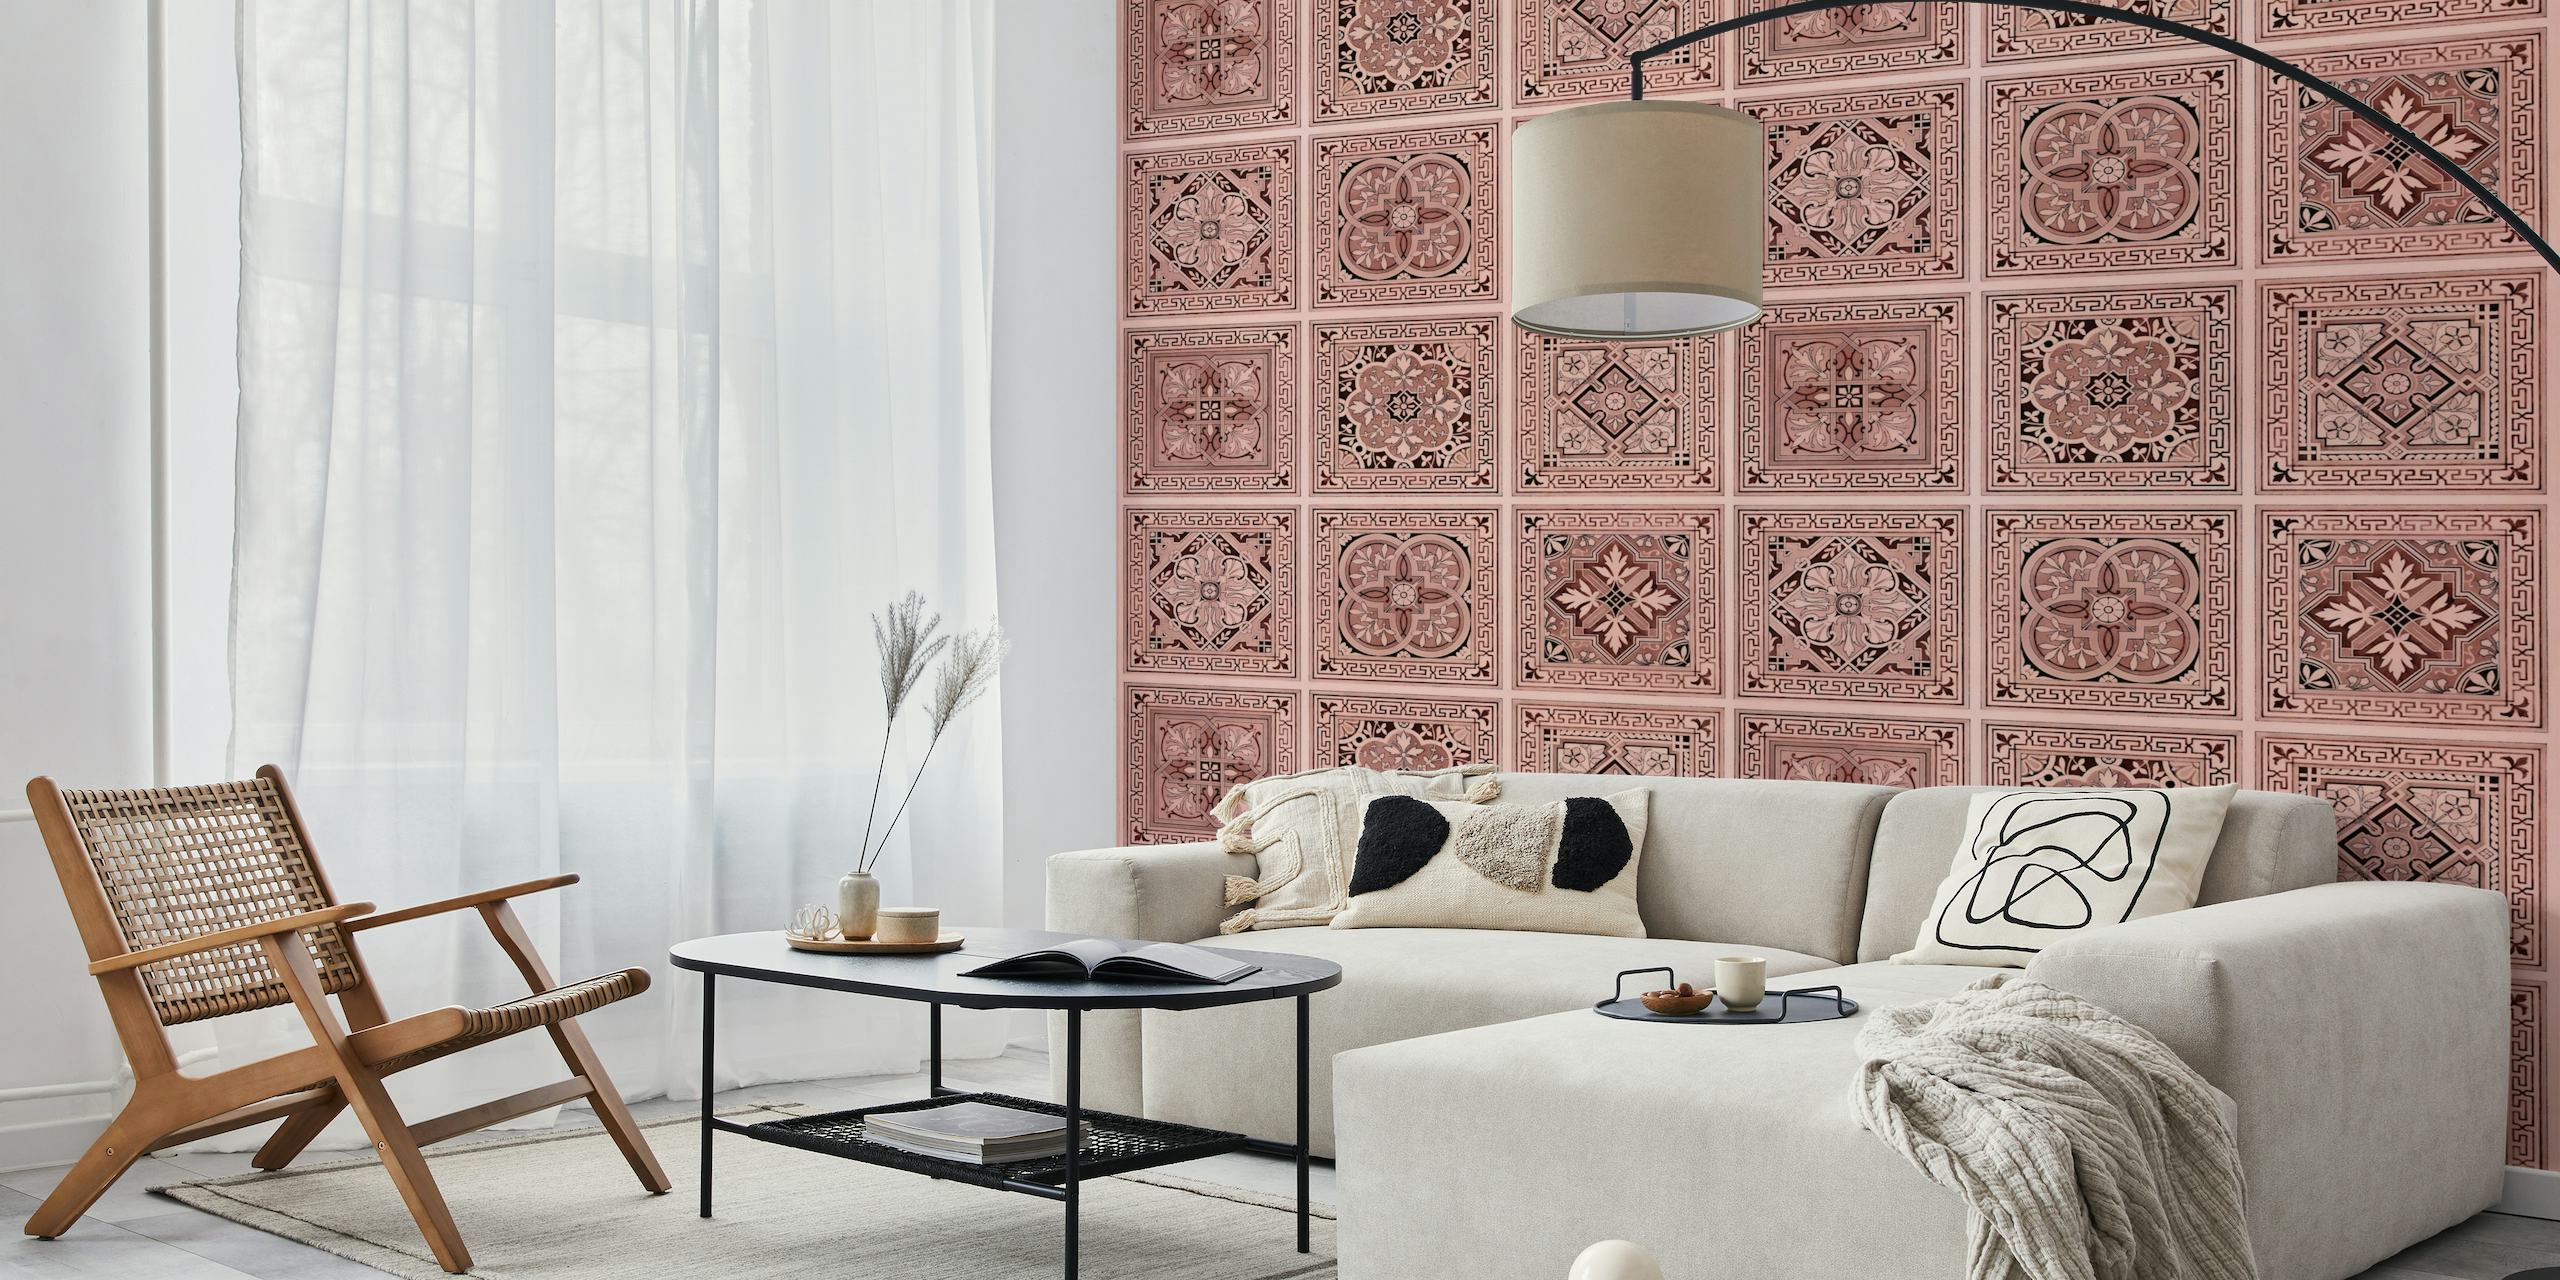 Mural de pared con motivos de azulejos de color nude y diseños florales ornamentados, perfecto para la decoración del hogar.